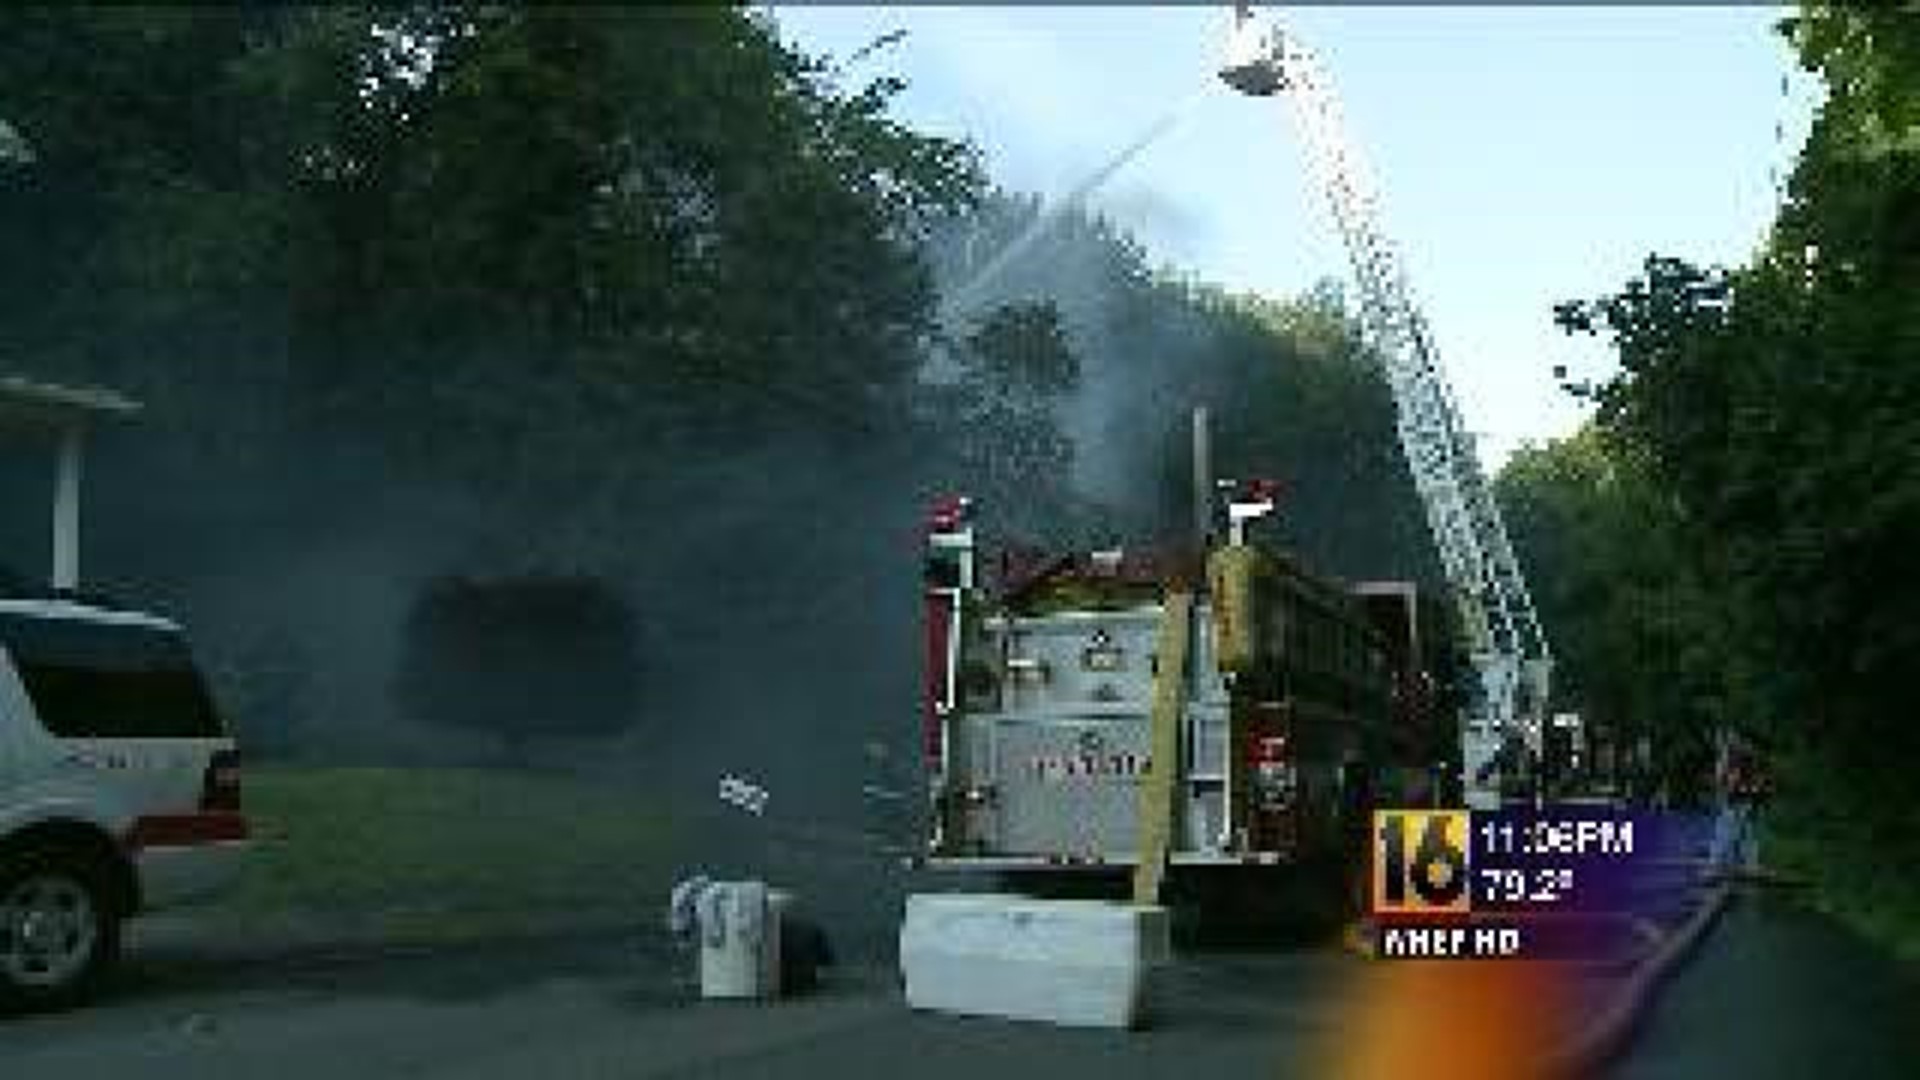 Firefighters Battle 2-Alarm Fire In Scranton